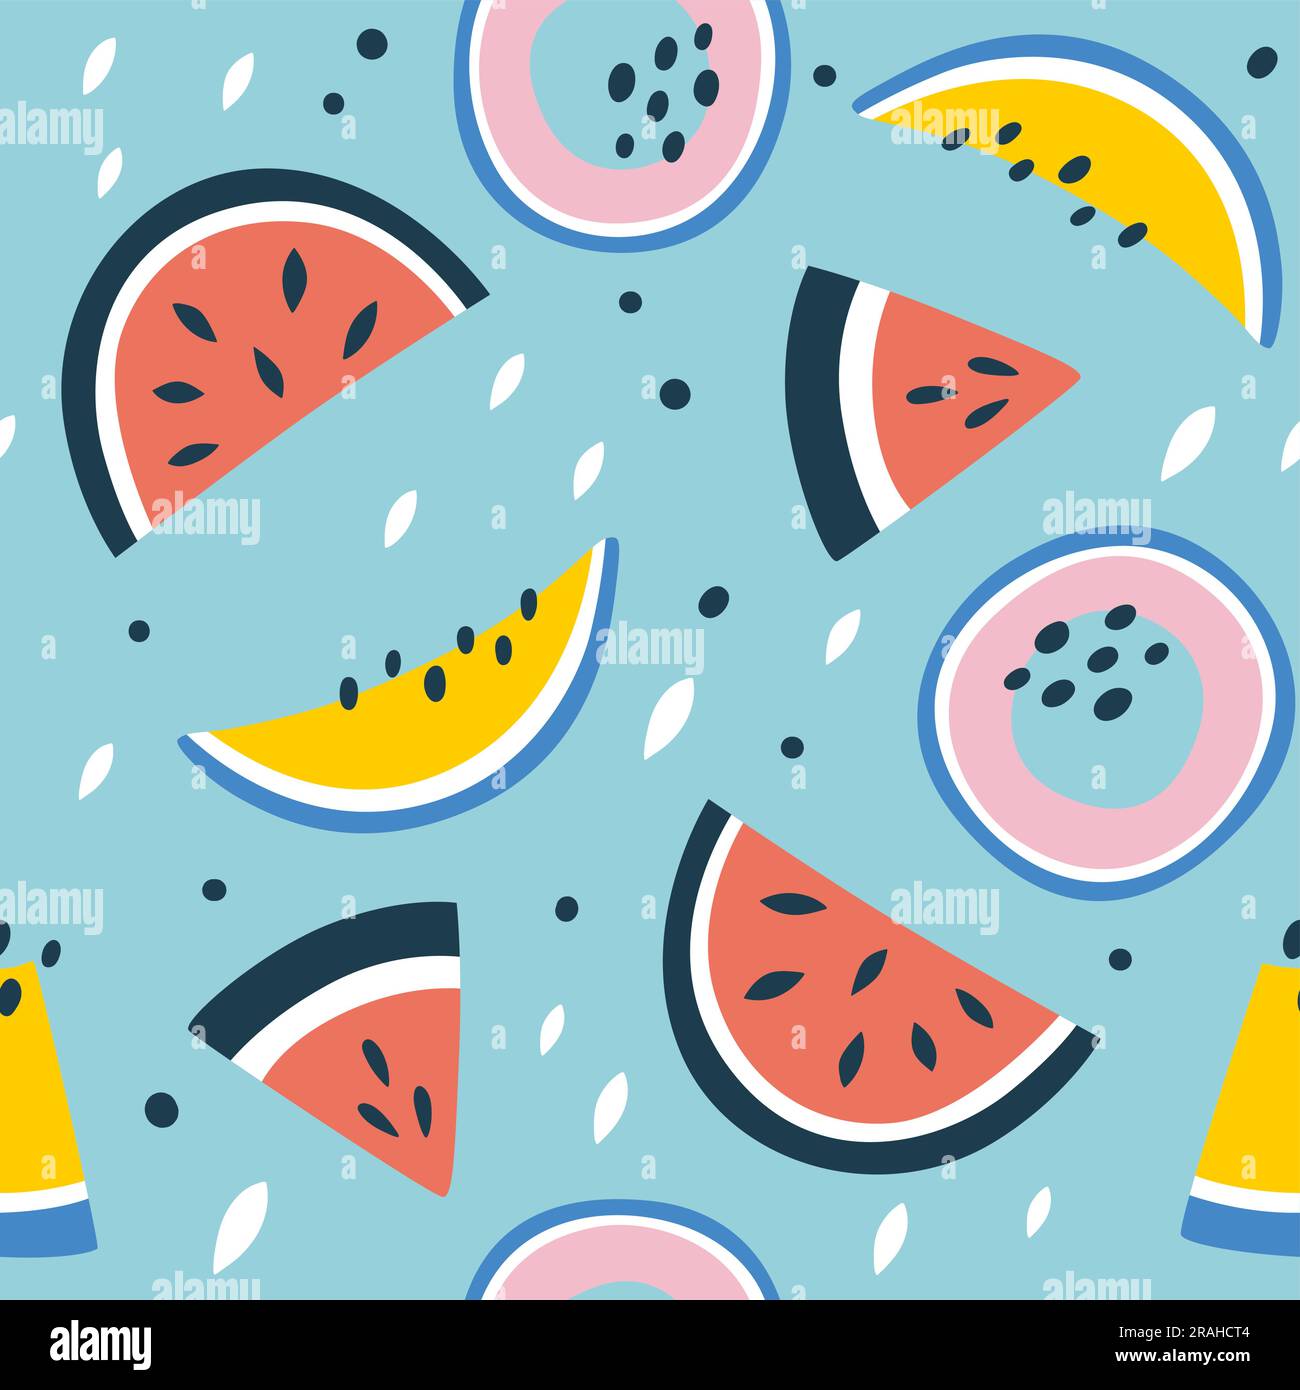 Nahtloses Muster aus Wassermelonen-Früchten. Quadratisches Wiederholungsmuster mit Melonen- und Wassermelonenscheiben. Abstrakte bunte Komposition. Flaches Vektormuster. Stock Vektor